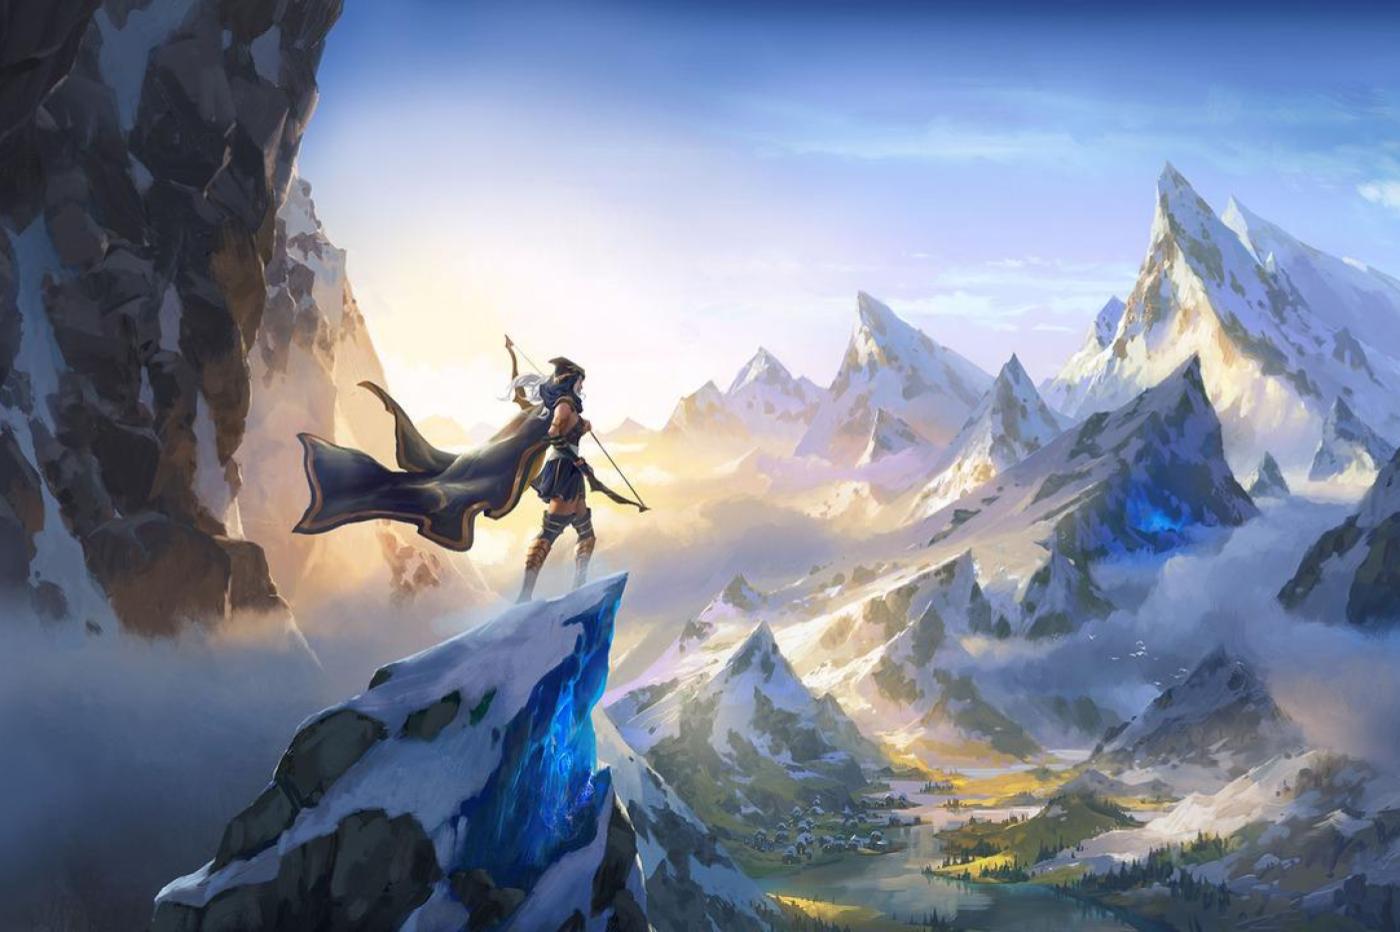 Image promotionnelle de Legends of Runeterra montrant Ashe, archère de League of Legends sur un pic de montagne observant un paysage montagneux enneigé